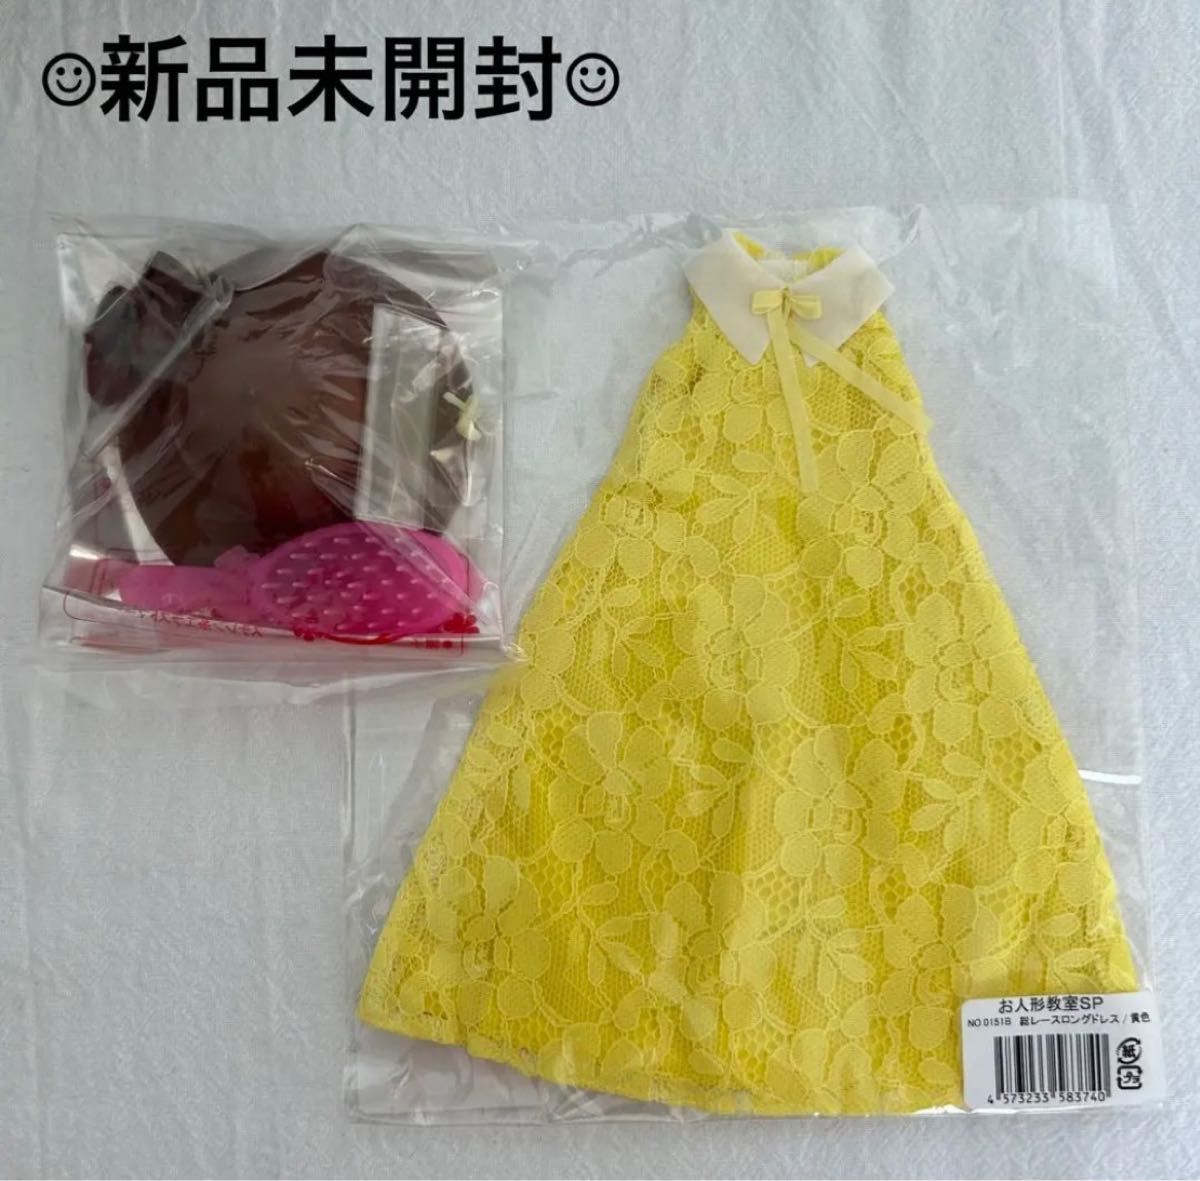 【新品未開封】リカちゃん ドレス 小物セット お人形教室 リカちゃんキャッスル